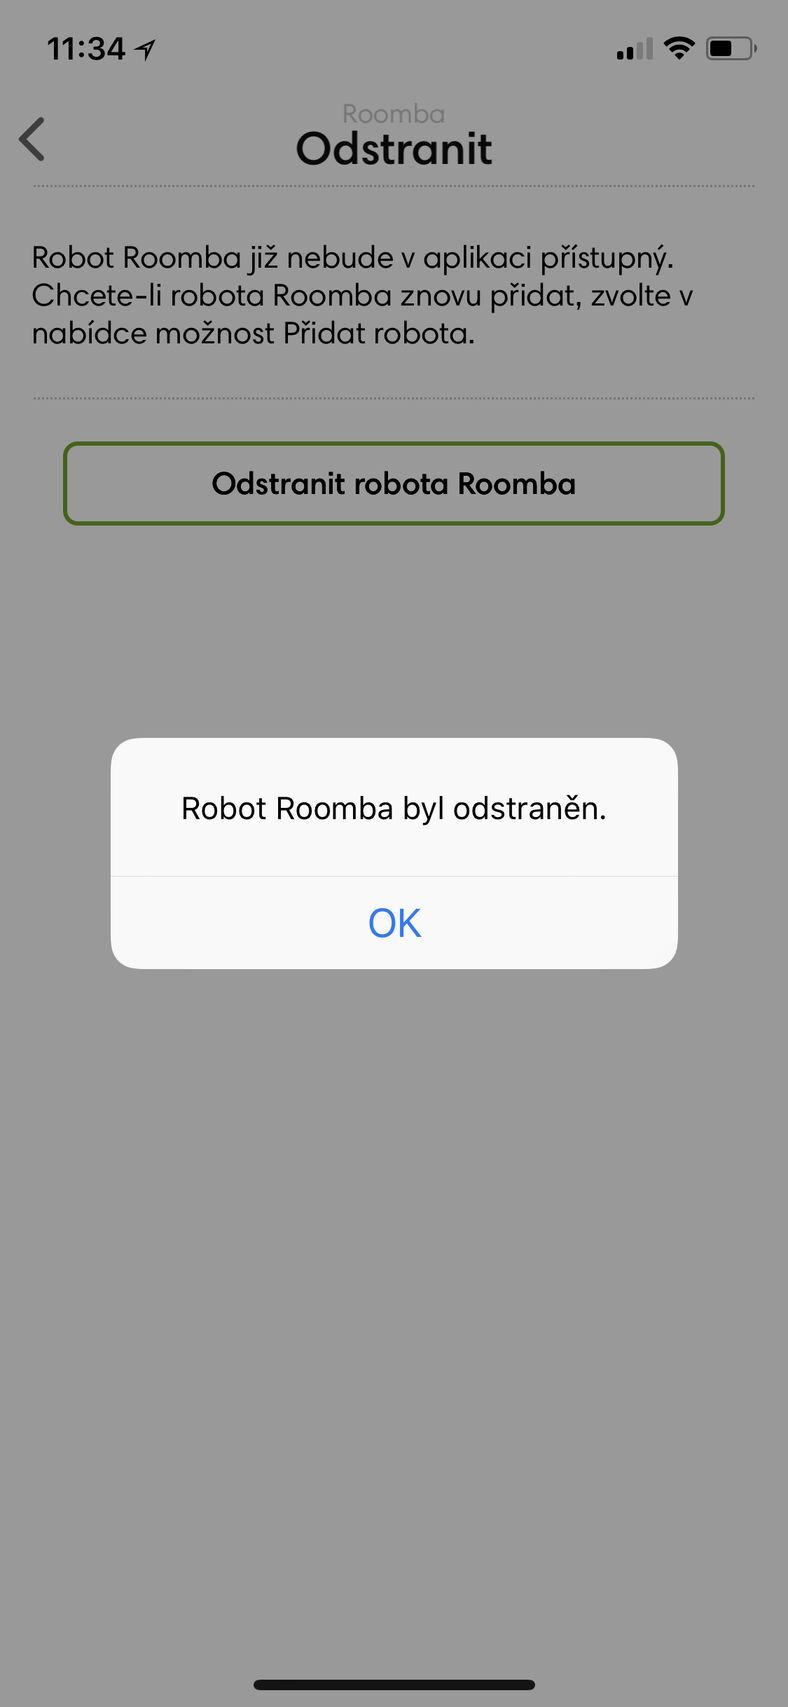 iRobot Home